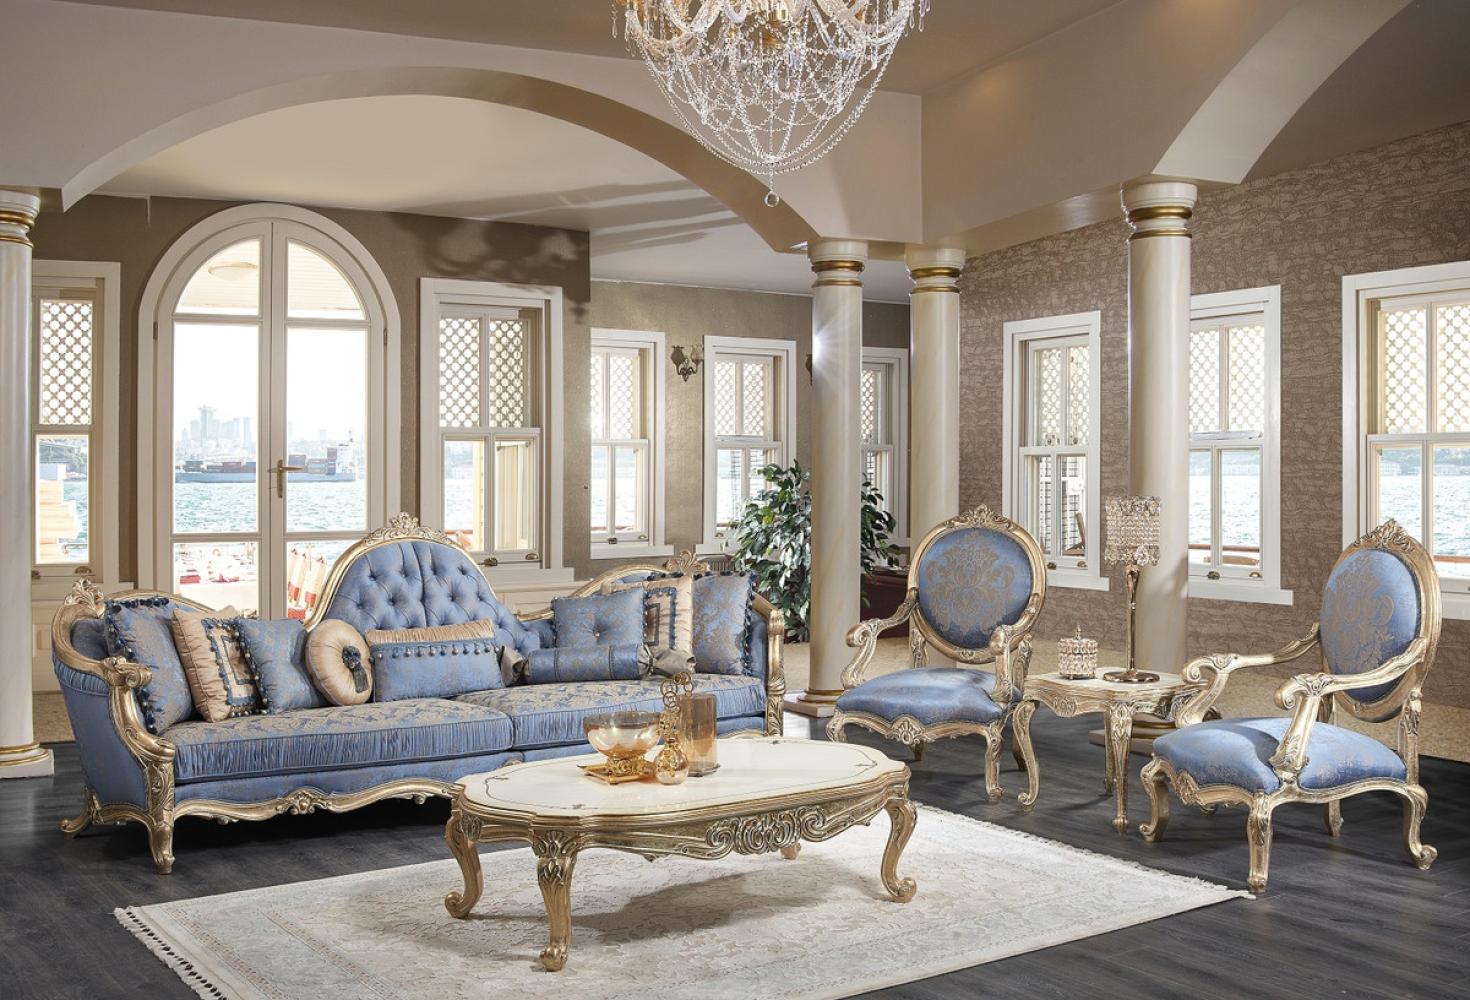 Casa Padrino Luxus Barock Wohnzimmer Set Hellblau / Weiß / Antik Gold - 2 Sofas & 2 Sessel & 1 Couchtisch & 2 Beistelltische - Barock Wohnzimmer Möbel - Edel & Prunkvoll Bild 1